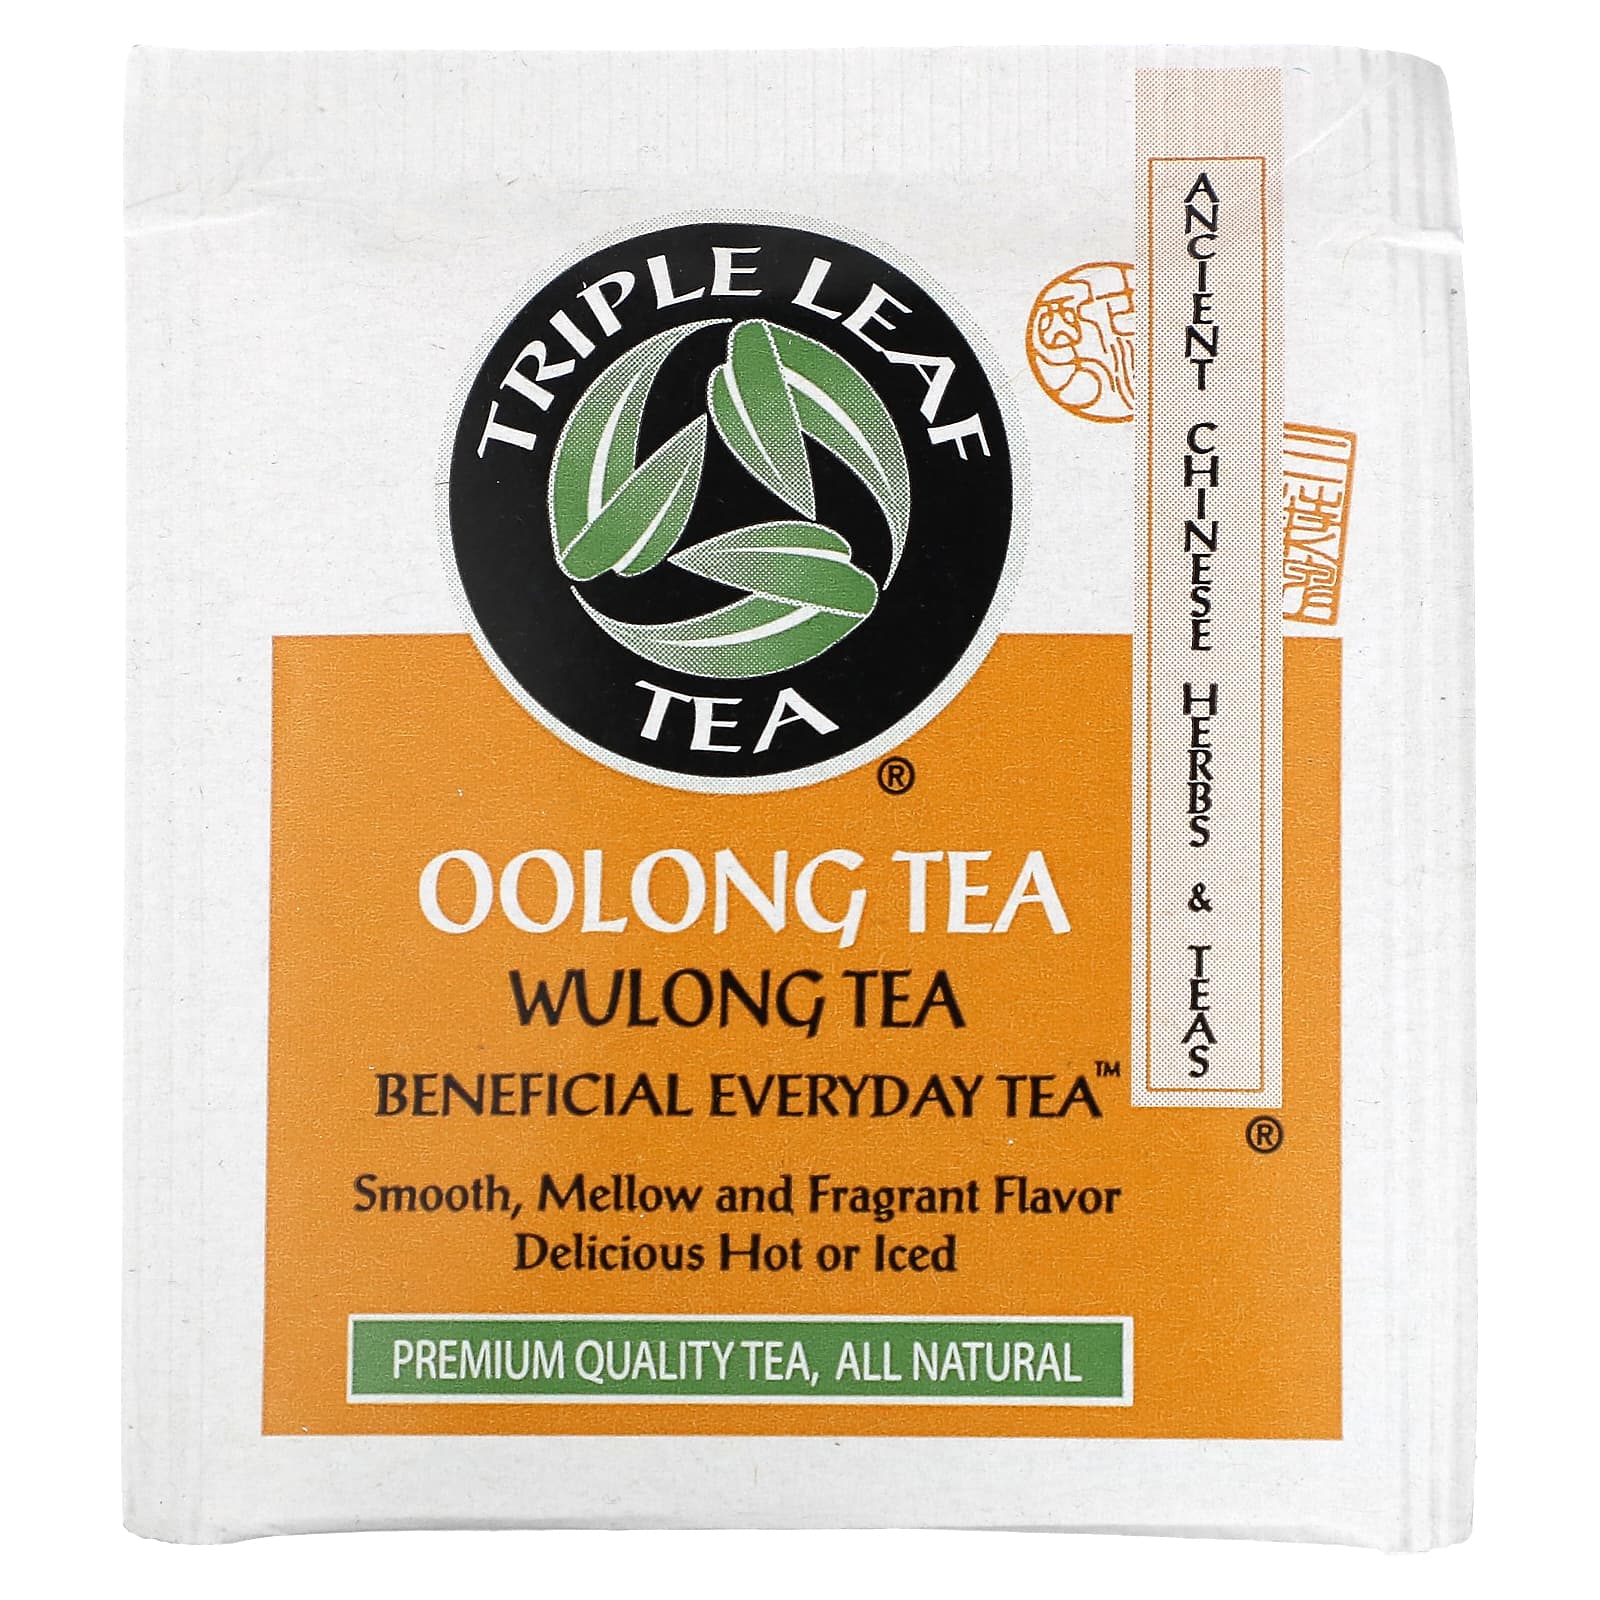 Triple Leaf Tea Wulong Oolong Tea 20 Tea Bags 1 34 Oz 38 G